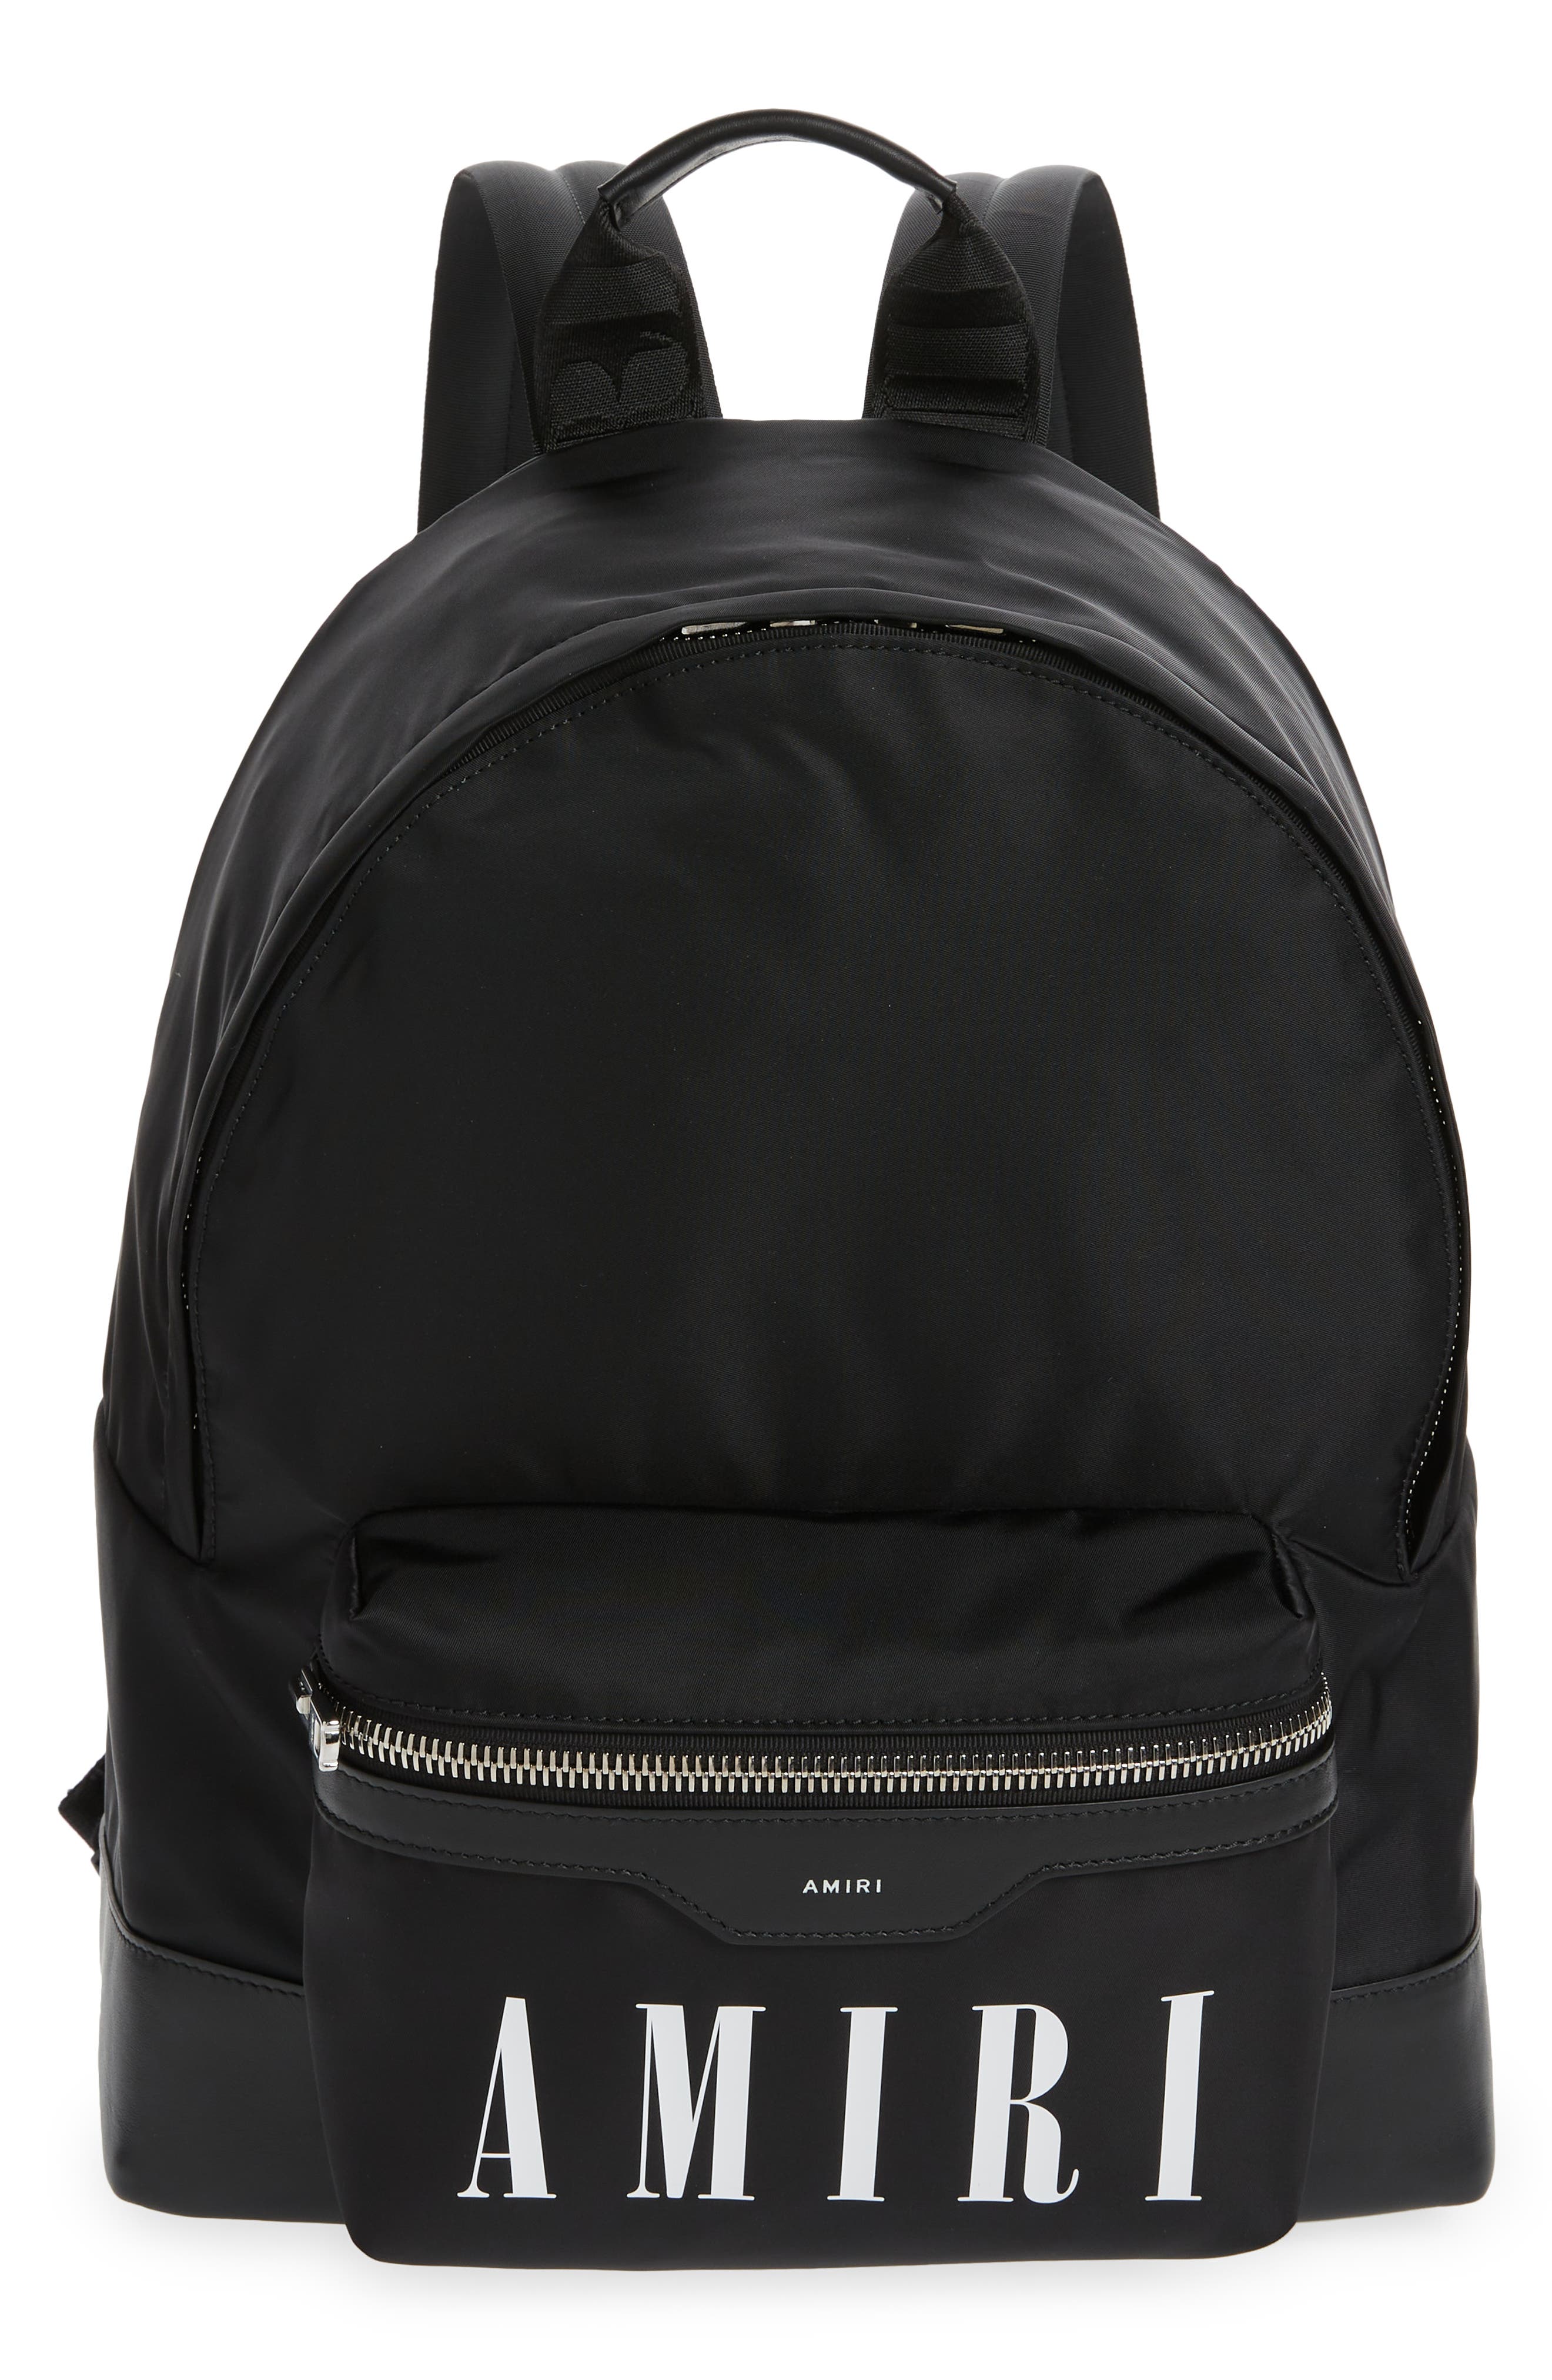 AMIRI Nylon Backpack in Black at Nordstrom